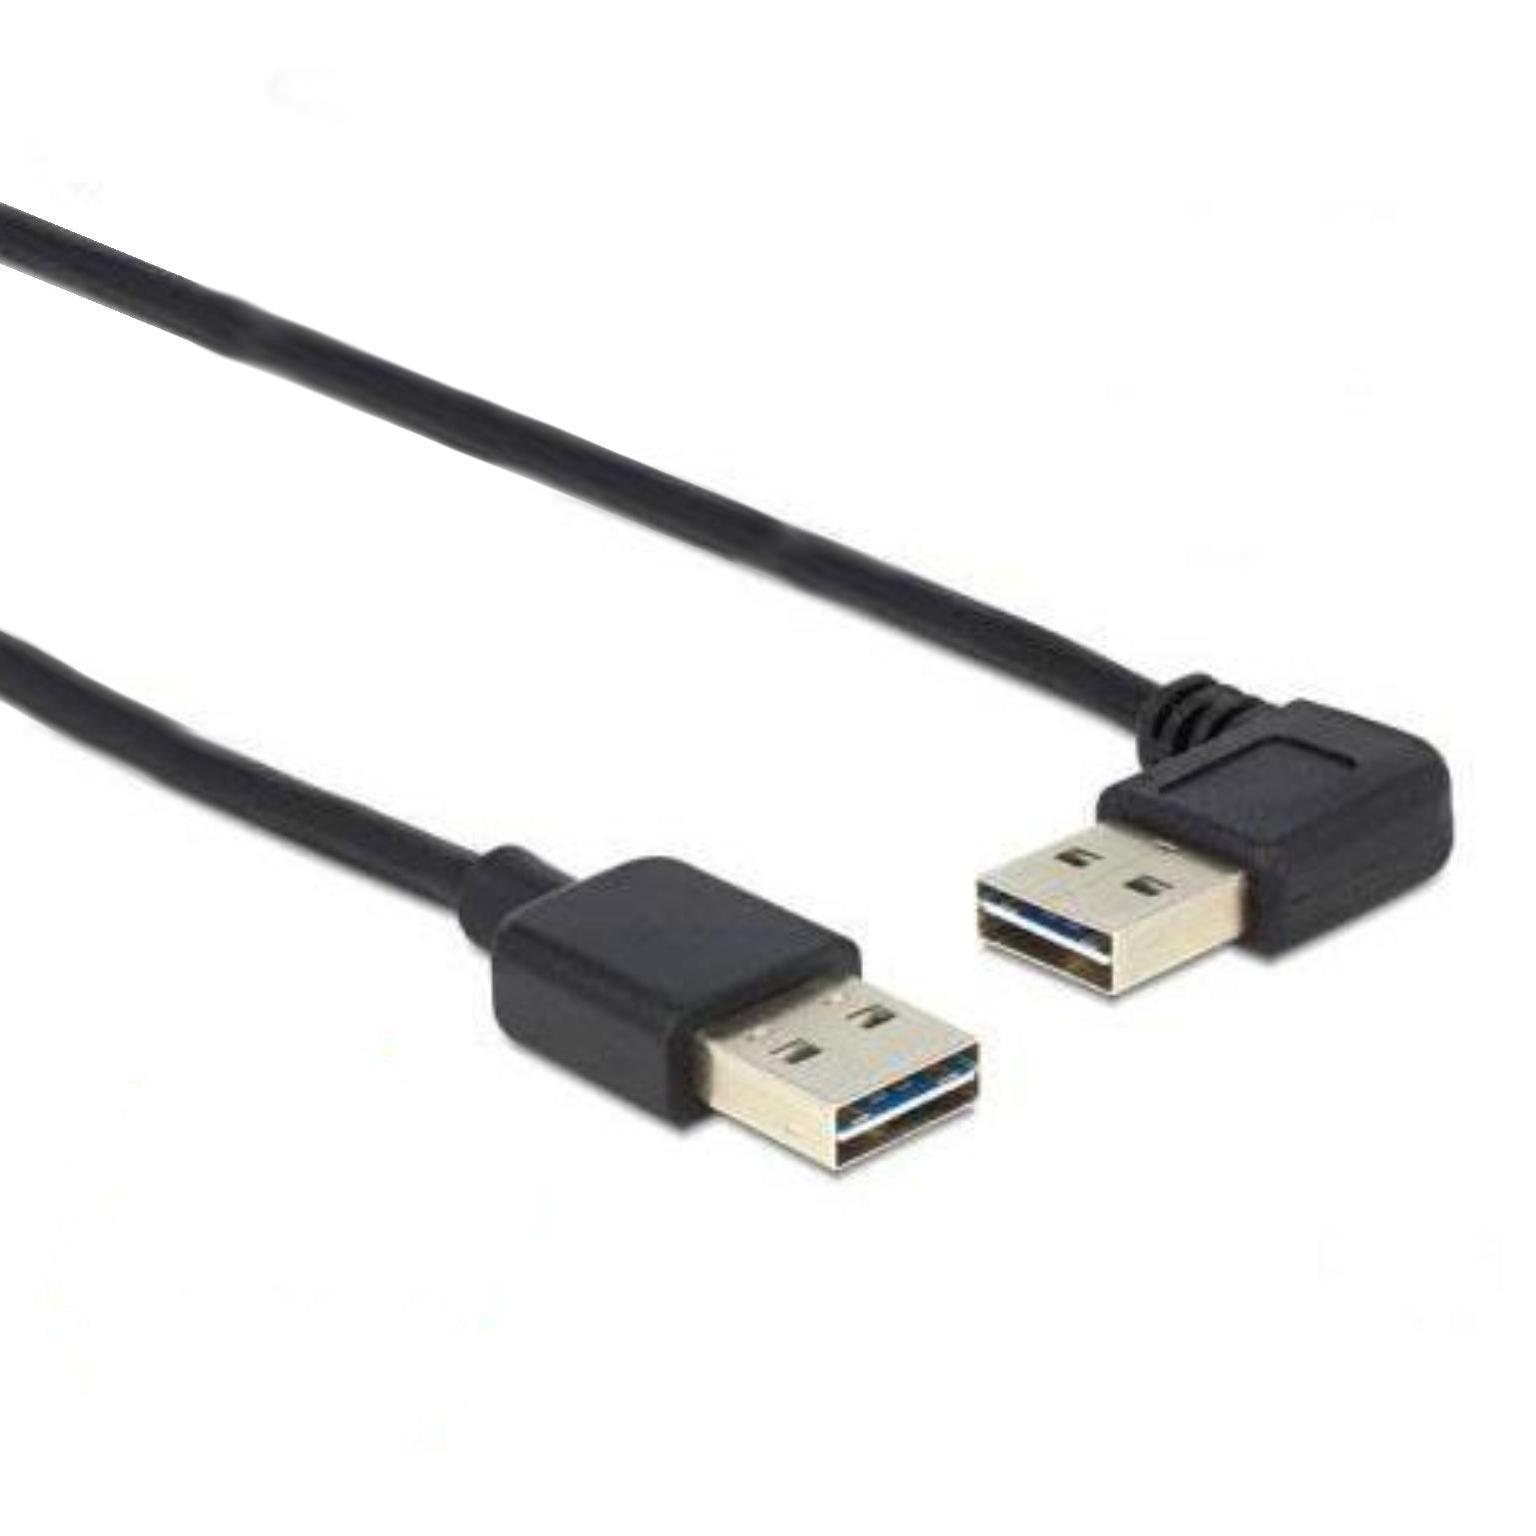 USB 2.0 kabel - Easy USB - Haaks - Delock